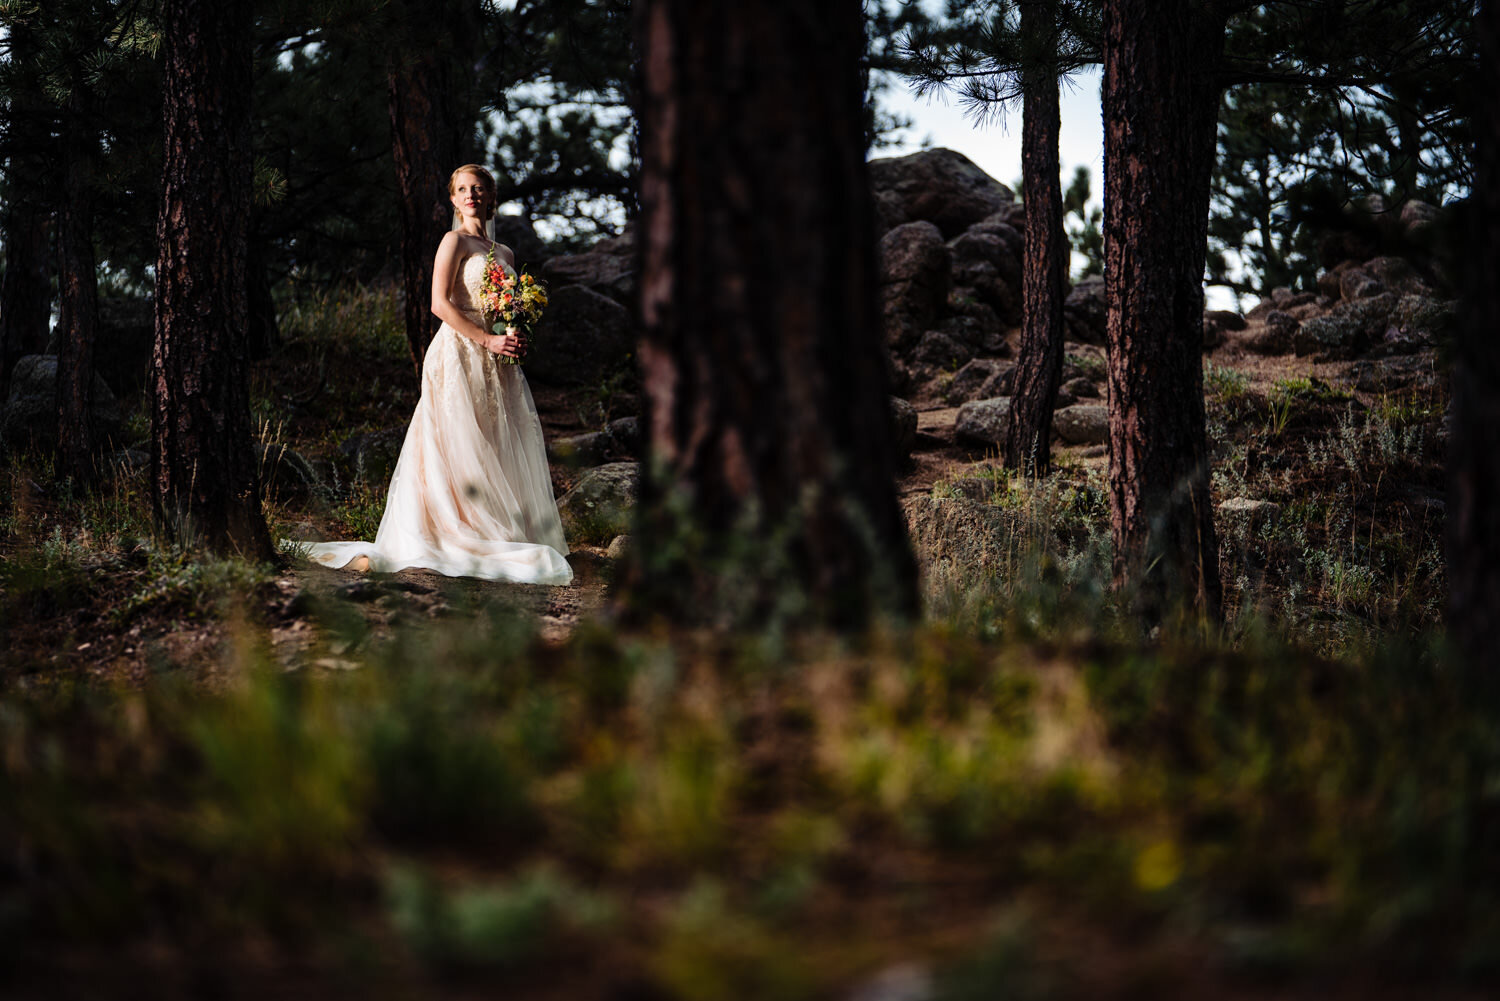  Boulder Colorado wedding at Sunrise Amphitheater by wedding photographer, JMGant Photography 